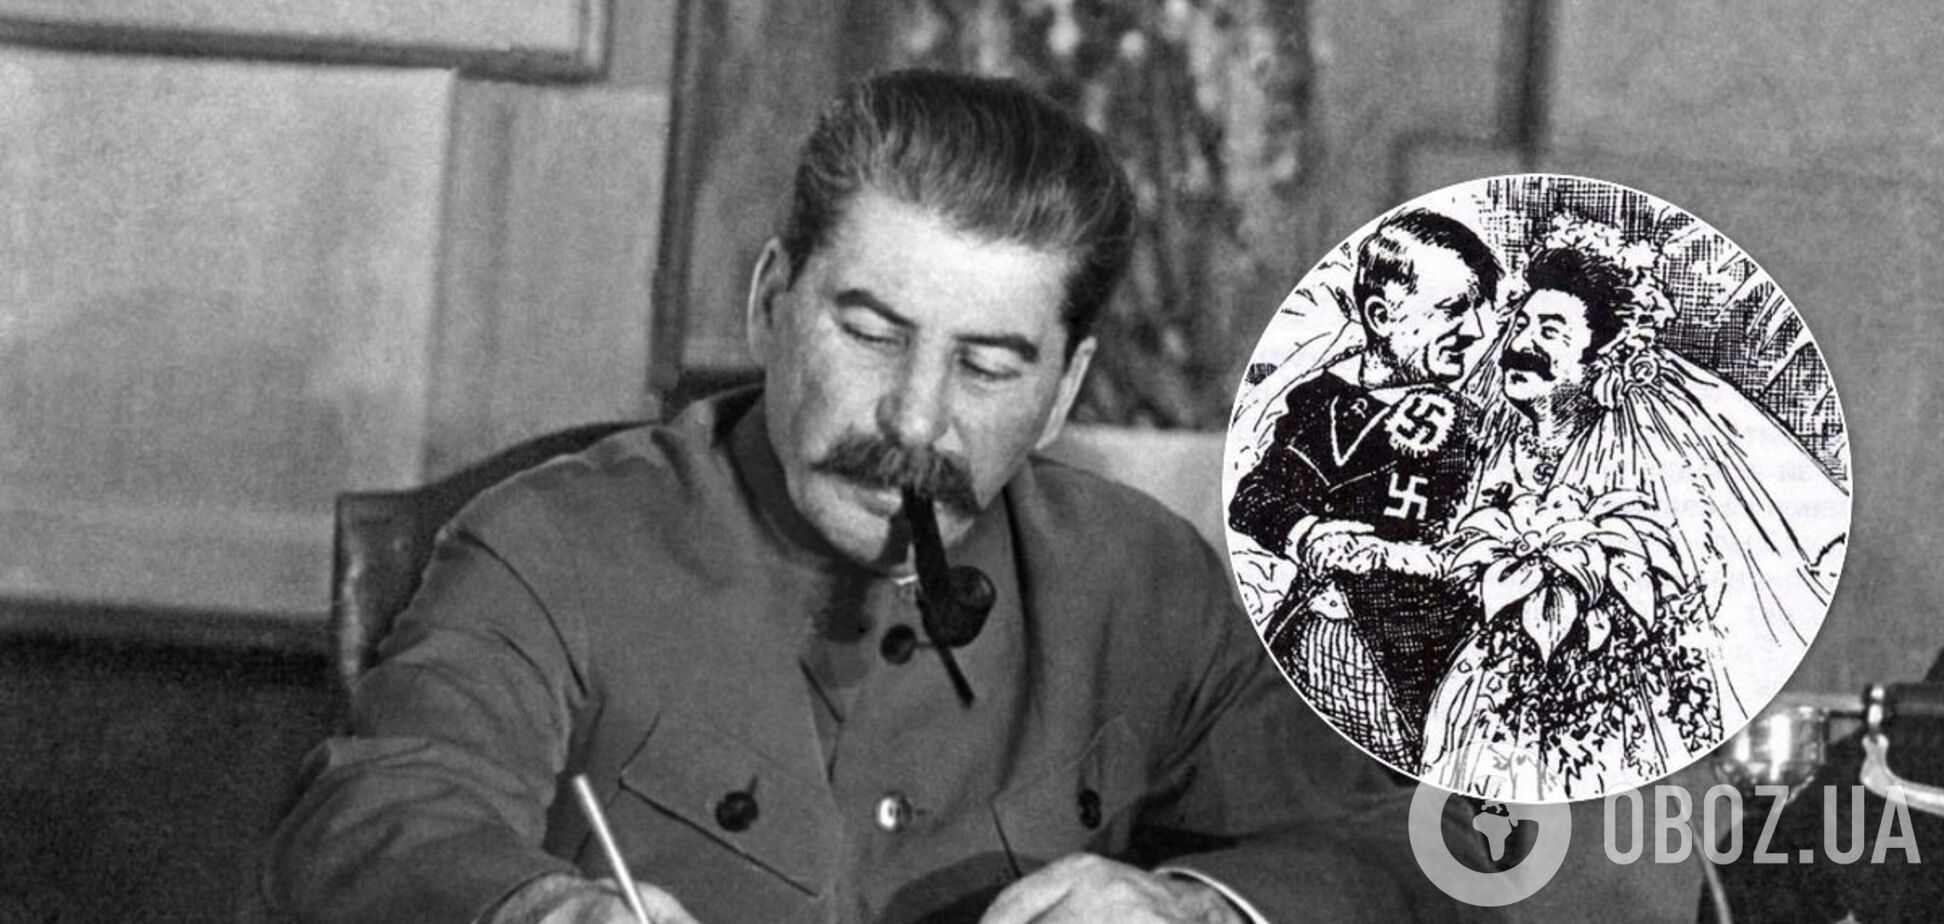 Историки напомнили о фото, доказывающих сотрудничество между Гитлером и Сталиным